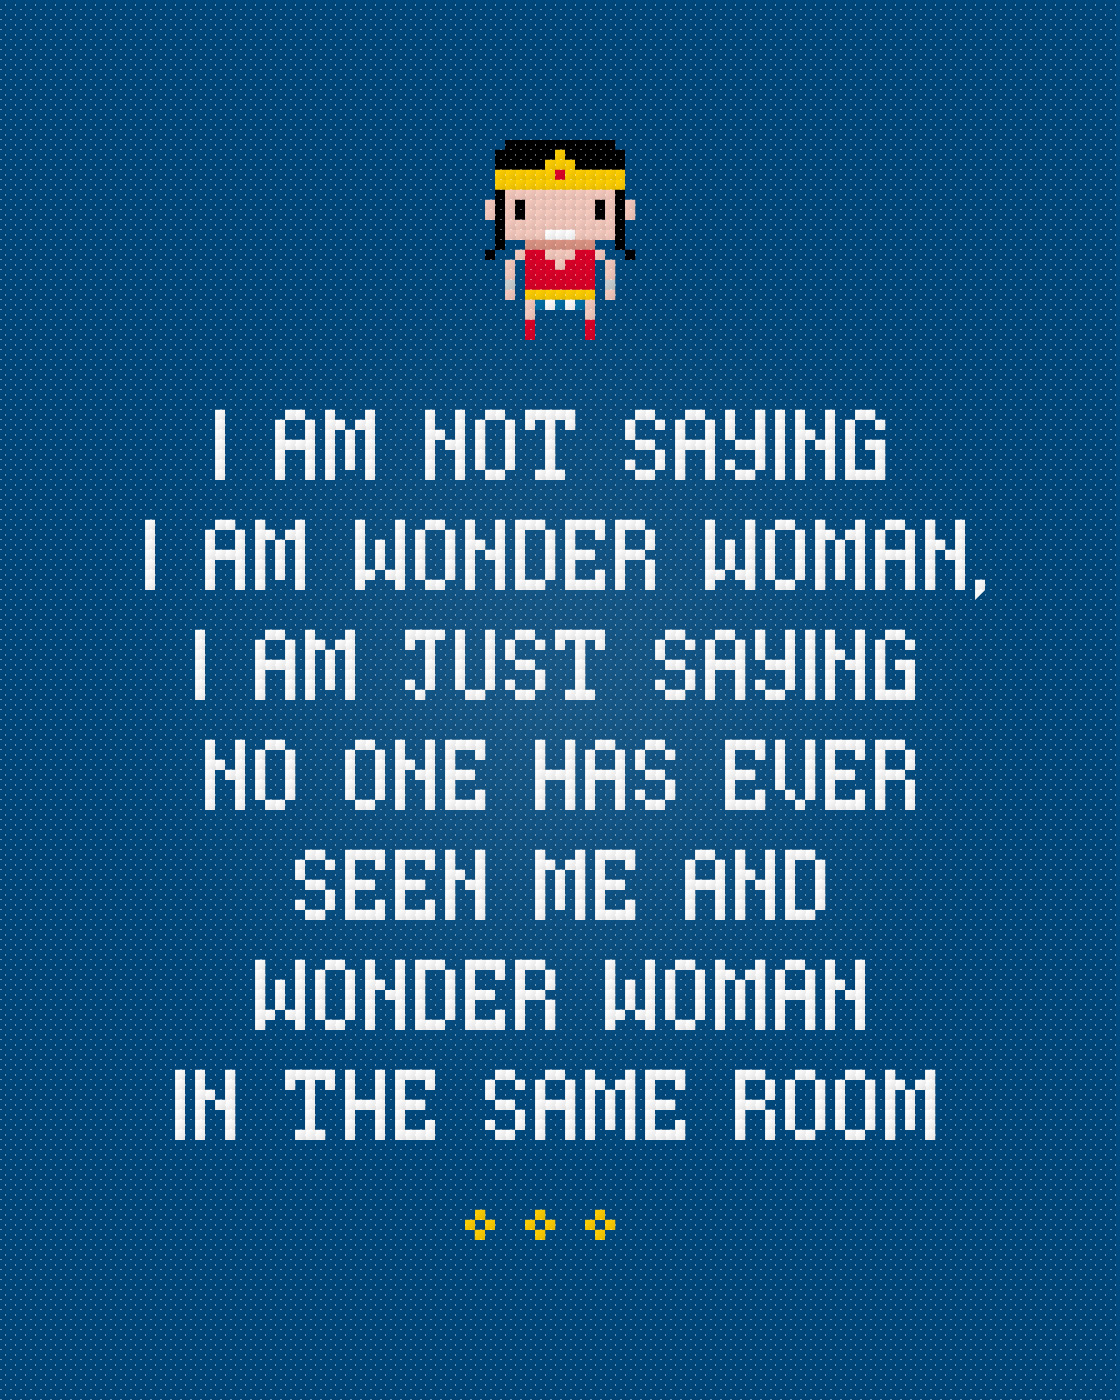  Wonder  Woman  Quotes  QuotesGram